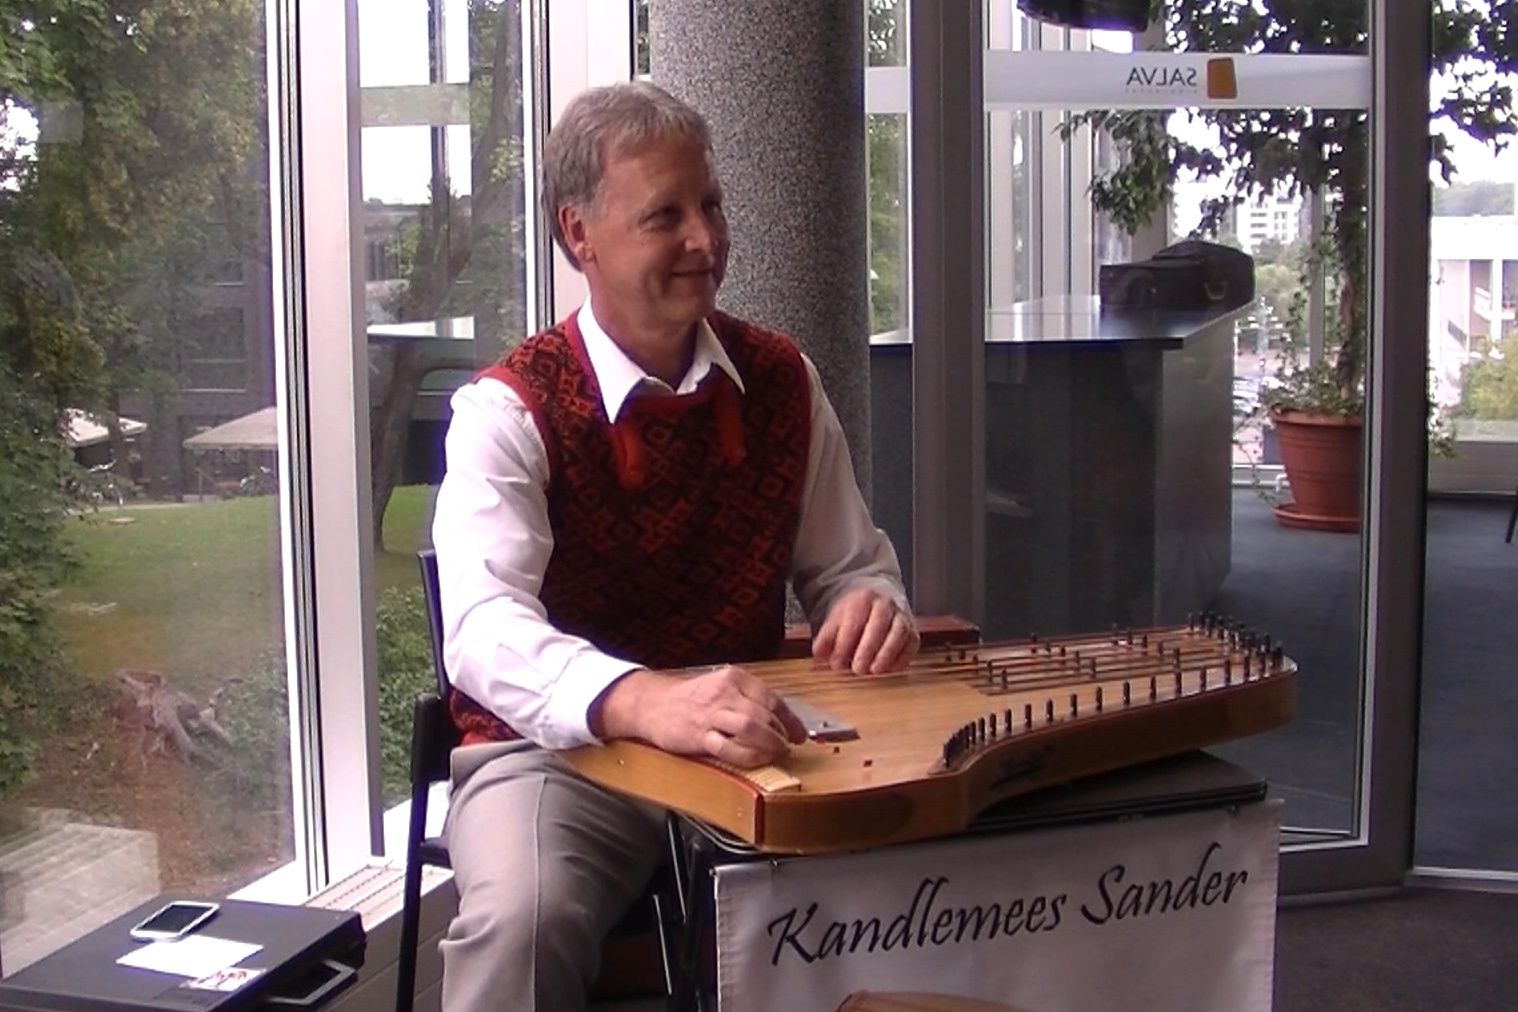 Kandlemngija Kandlemees Sander Karu Rahvusvahelise Folkloorifestivali Baltica 2013 avapeol Vanemuises